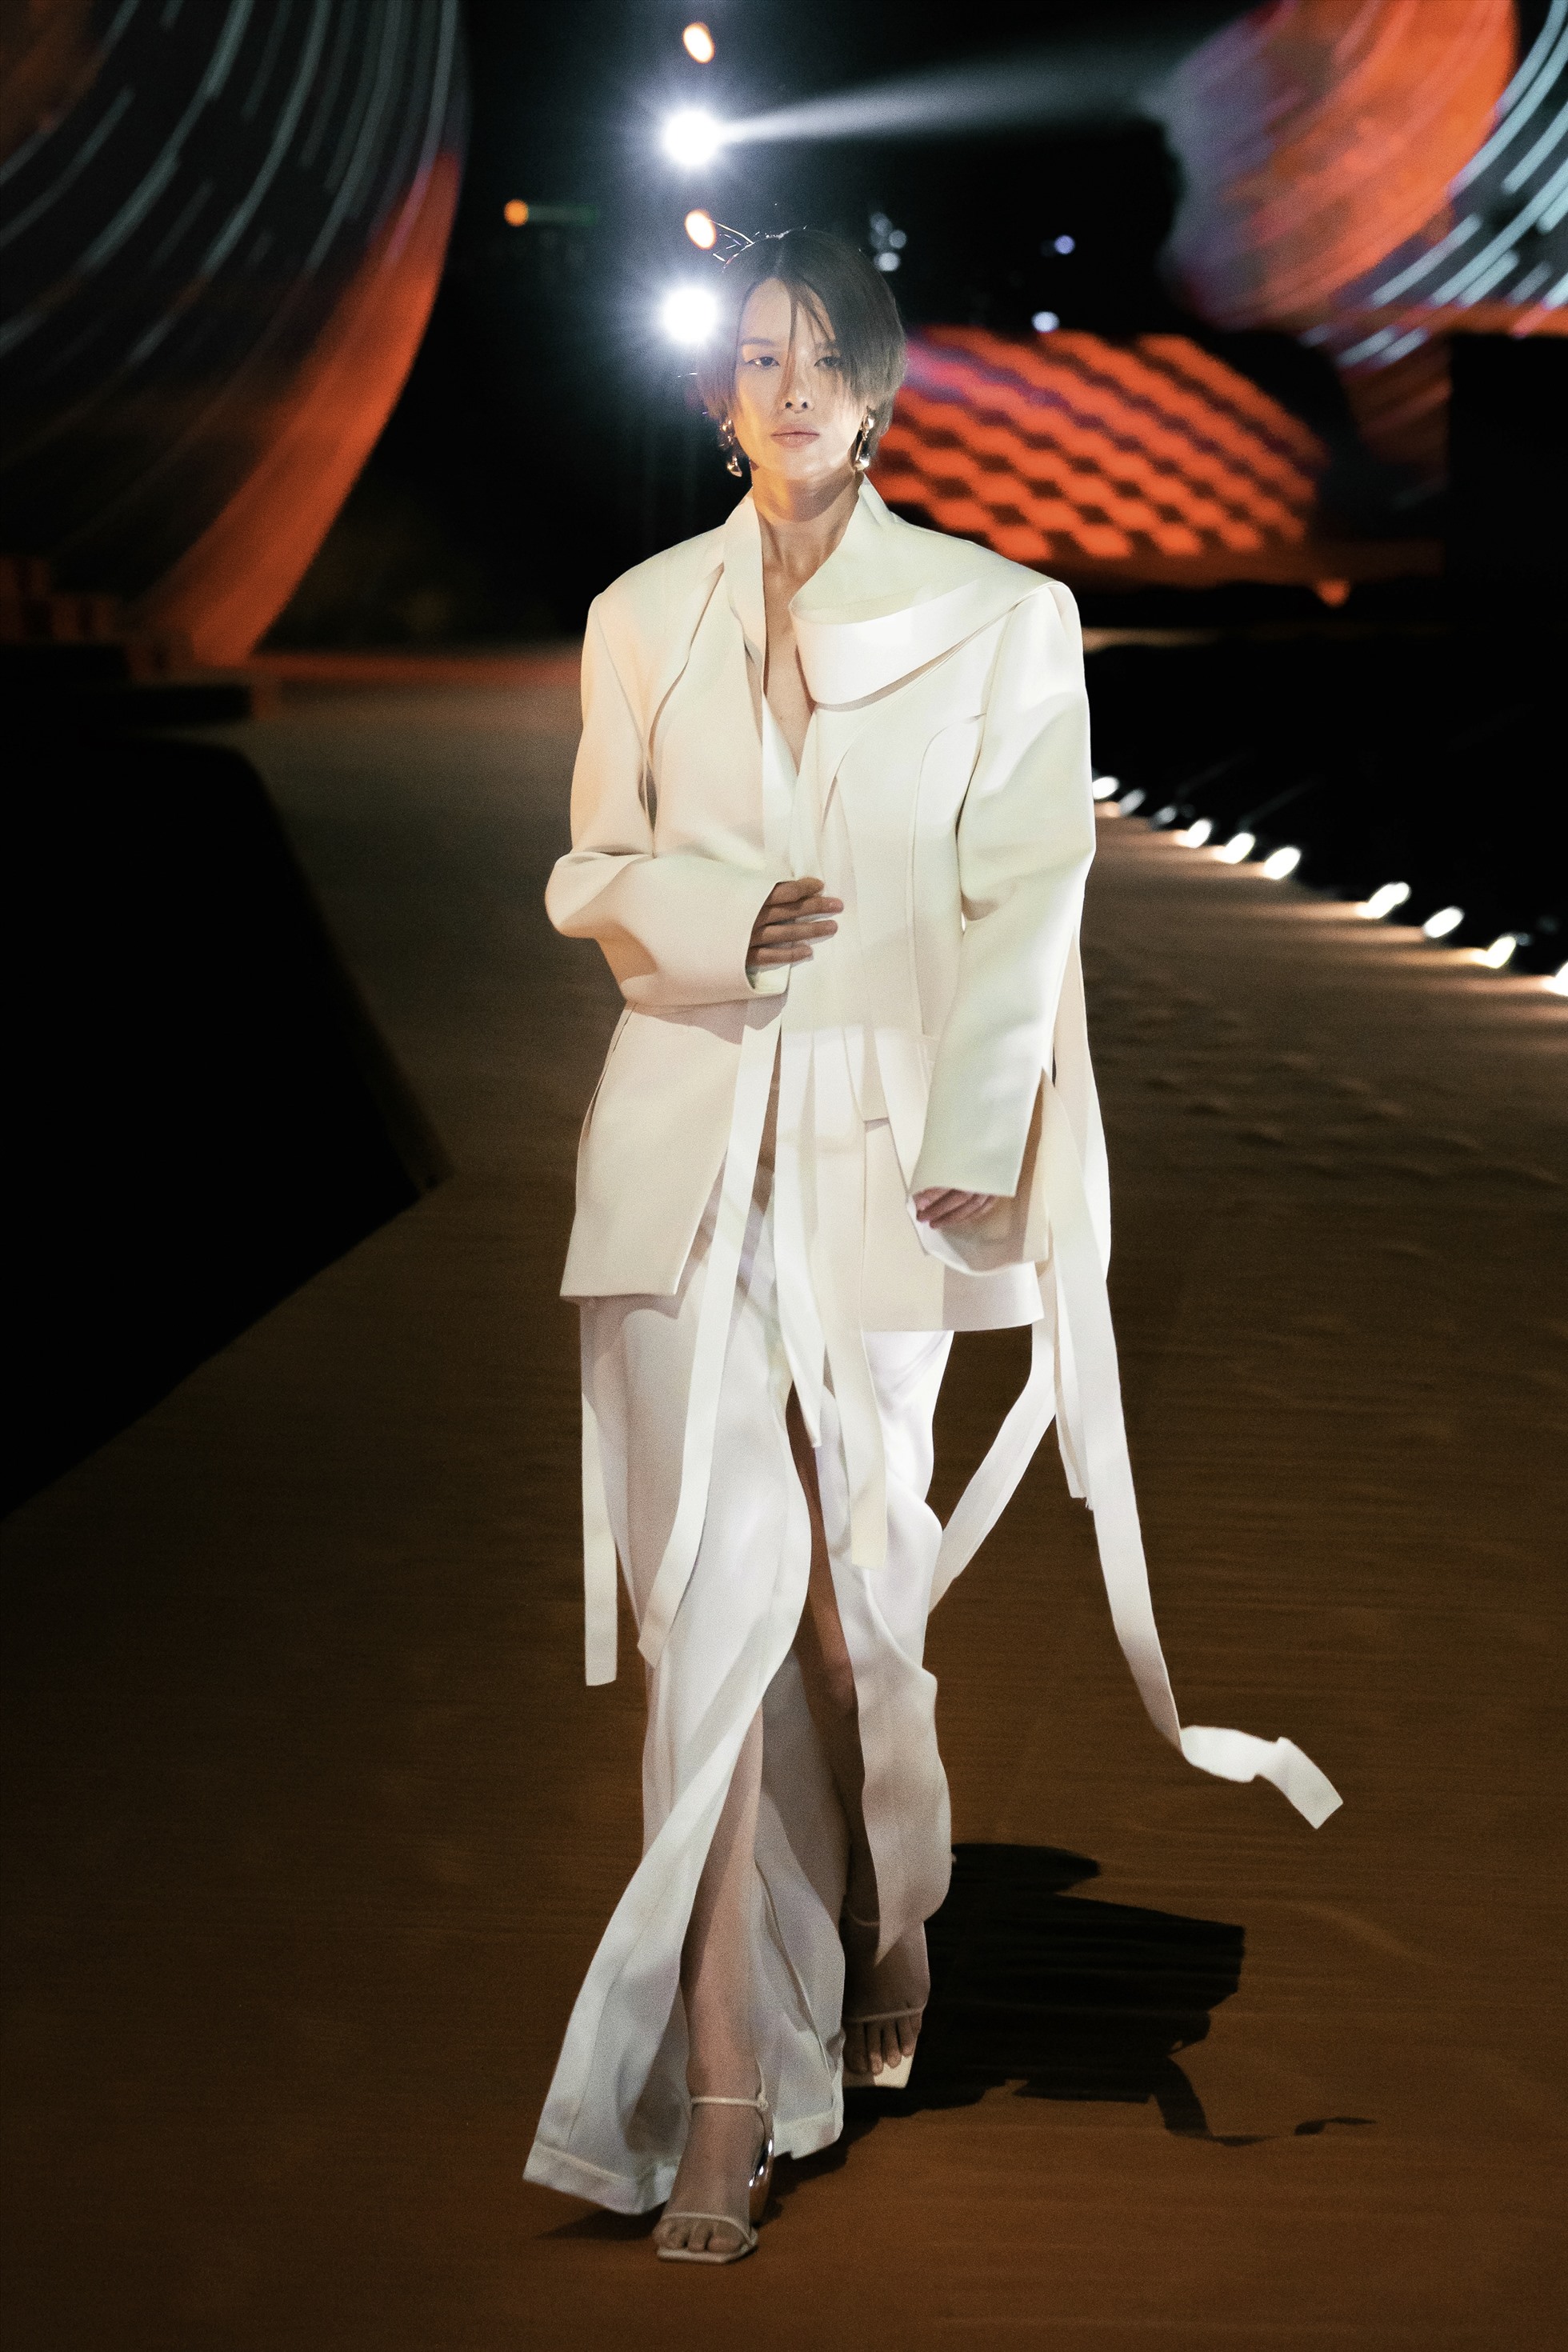 Người mẫu Hà Kino trong thiết kế blazer sử dụng kỹ thuật phá cấu trúc (deconstruction) của phương Tây với ve cổ vắt ra sau tạo điểm nhấn. Ảnh: Đại Ngô